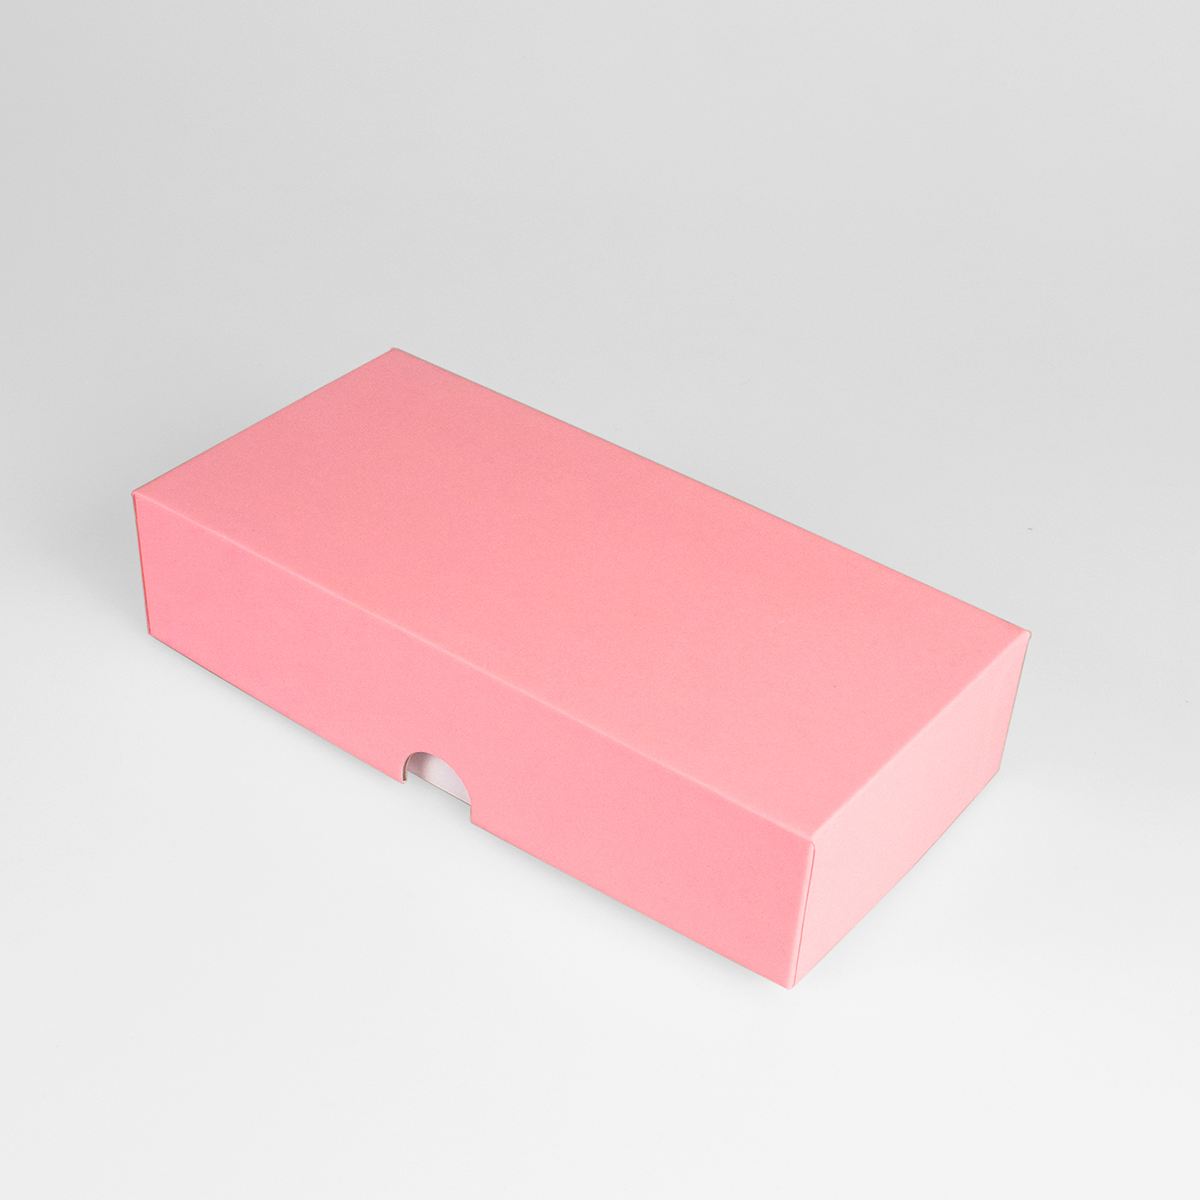 Подарочная коробка крышка-дно, 21.5 x 10.5 x 5 см. "Радуга", пудровый розовый, белый